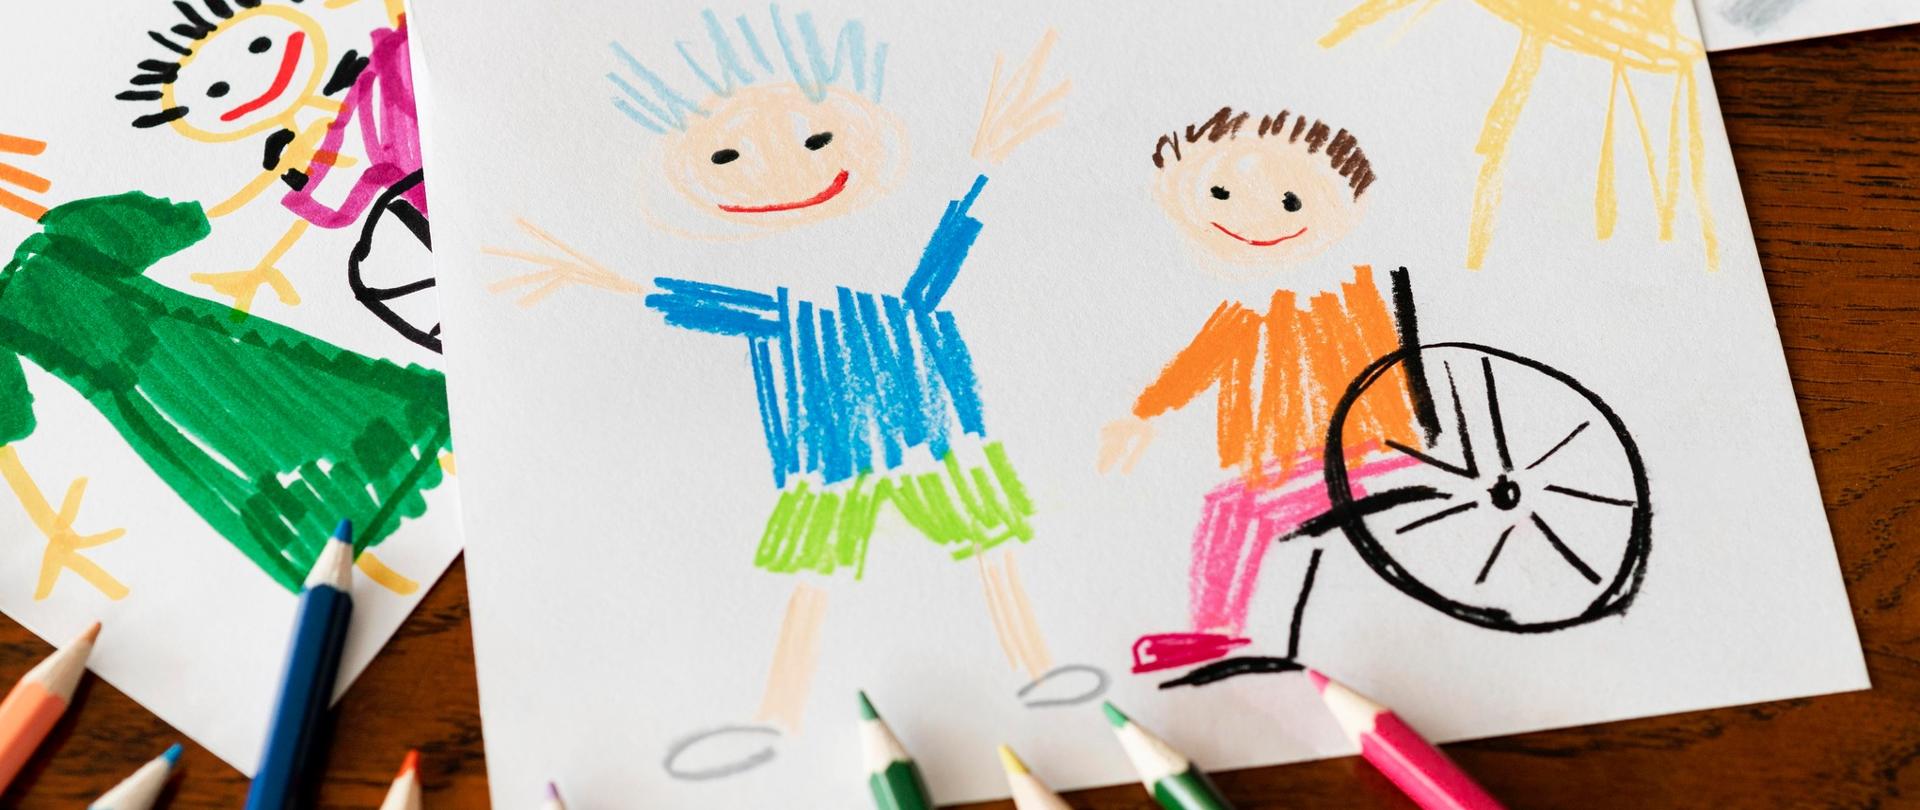 Dziecięcy rysunek przedstawiający dwójkę dzieci, w tym jedno na wózku inwalidzkim. Kolorowe kredki.